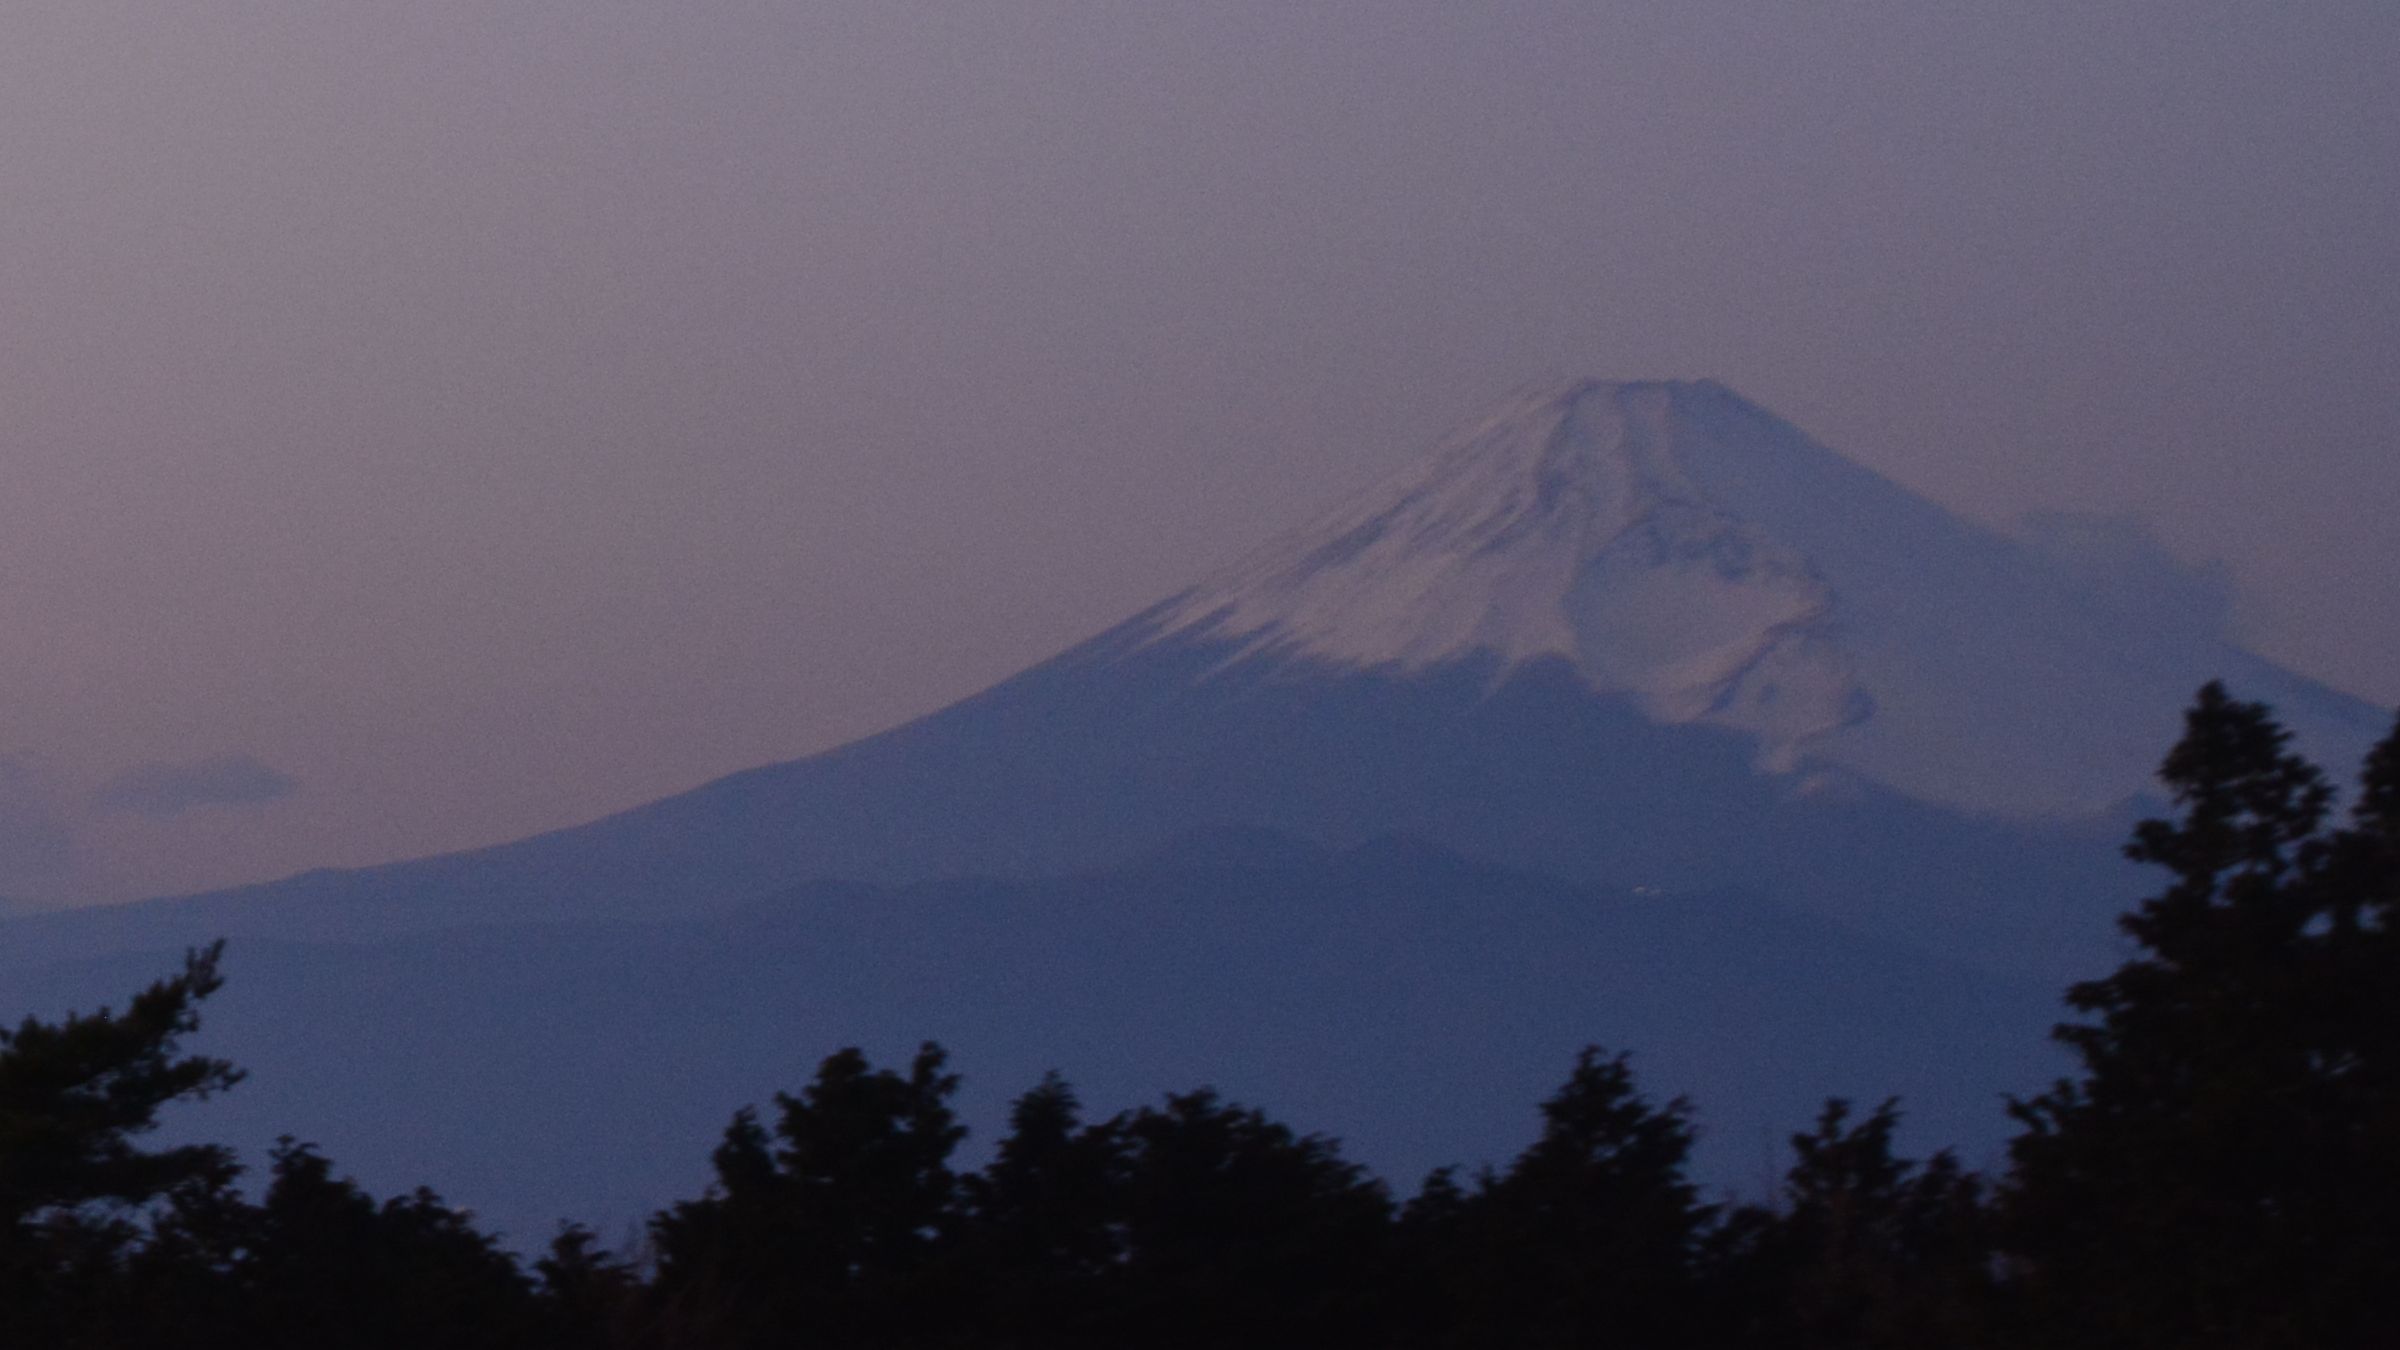 ☆【施設からの眺望】敷地内からの風景／富士山を眺望できる標高900mのリゾートホテル